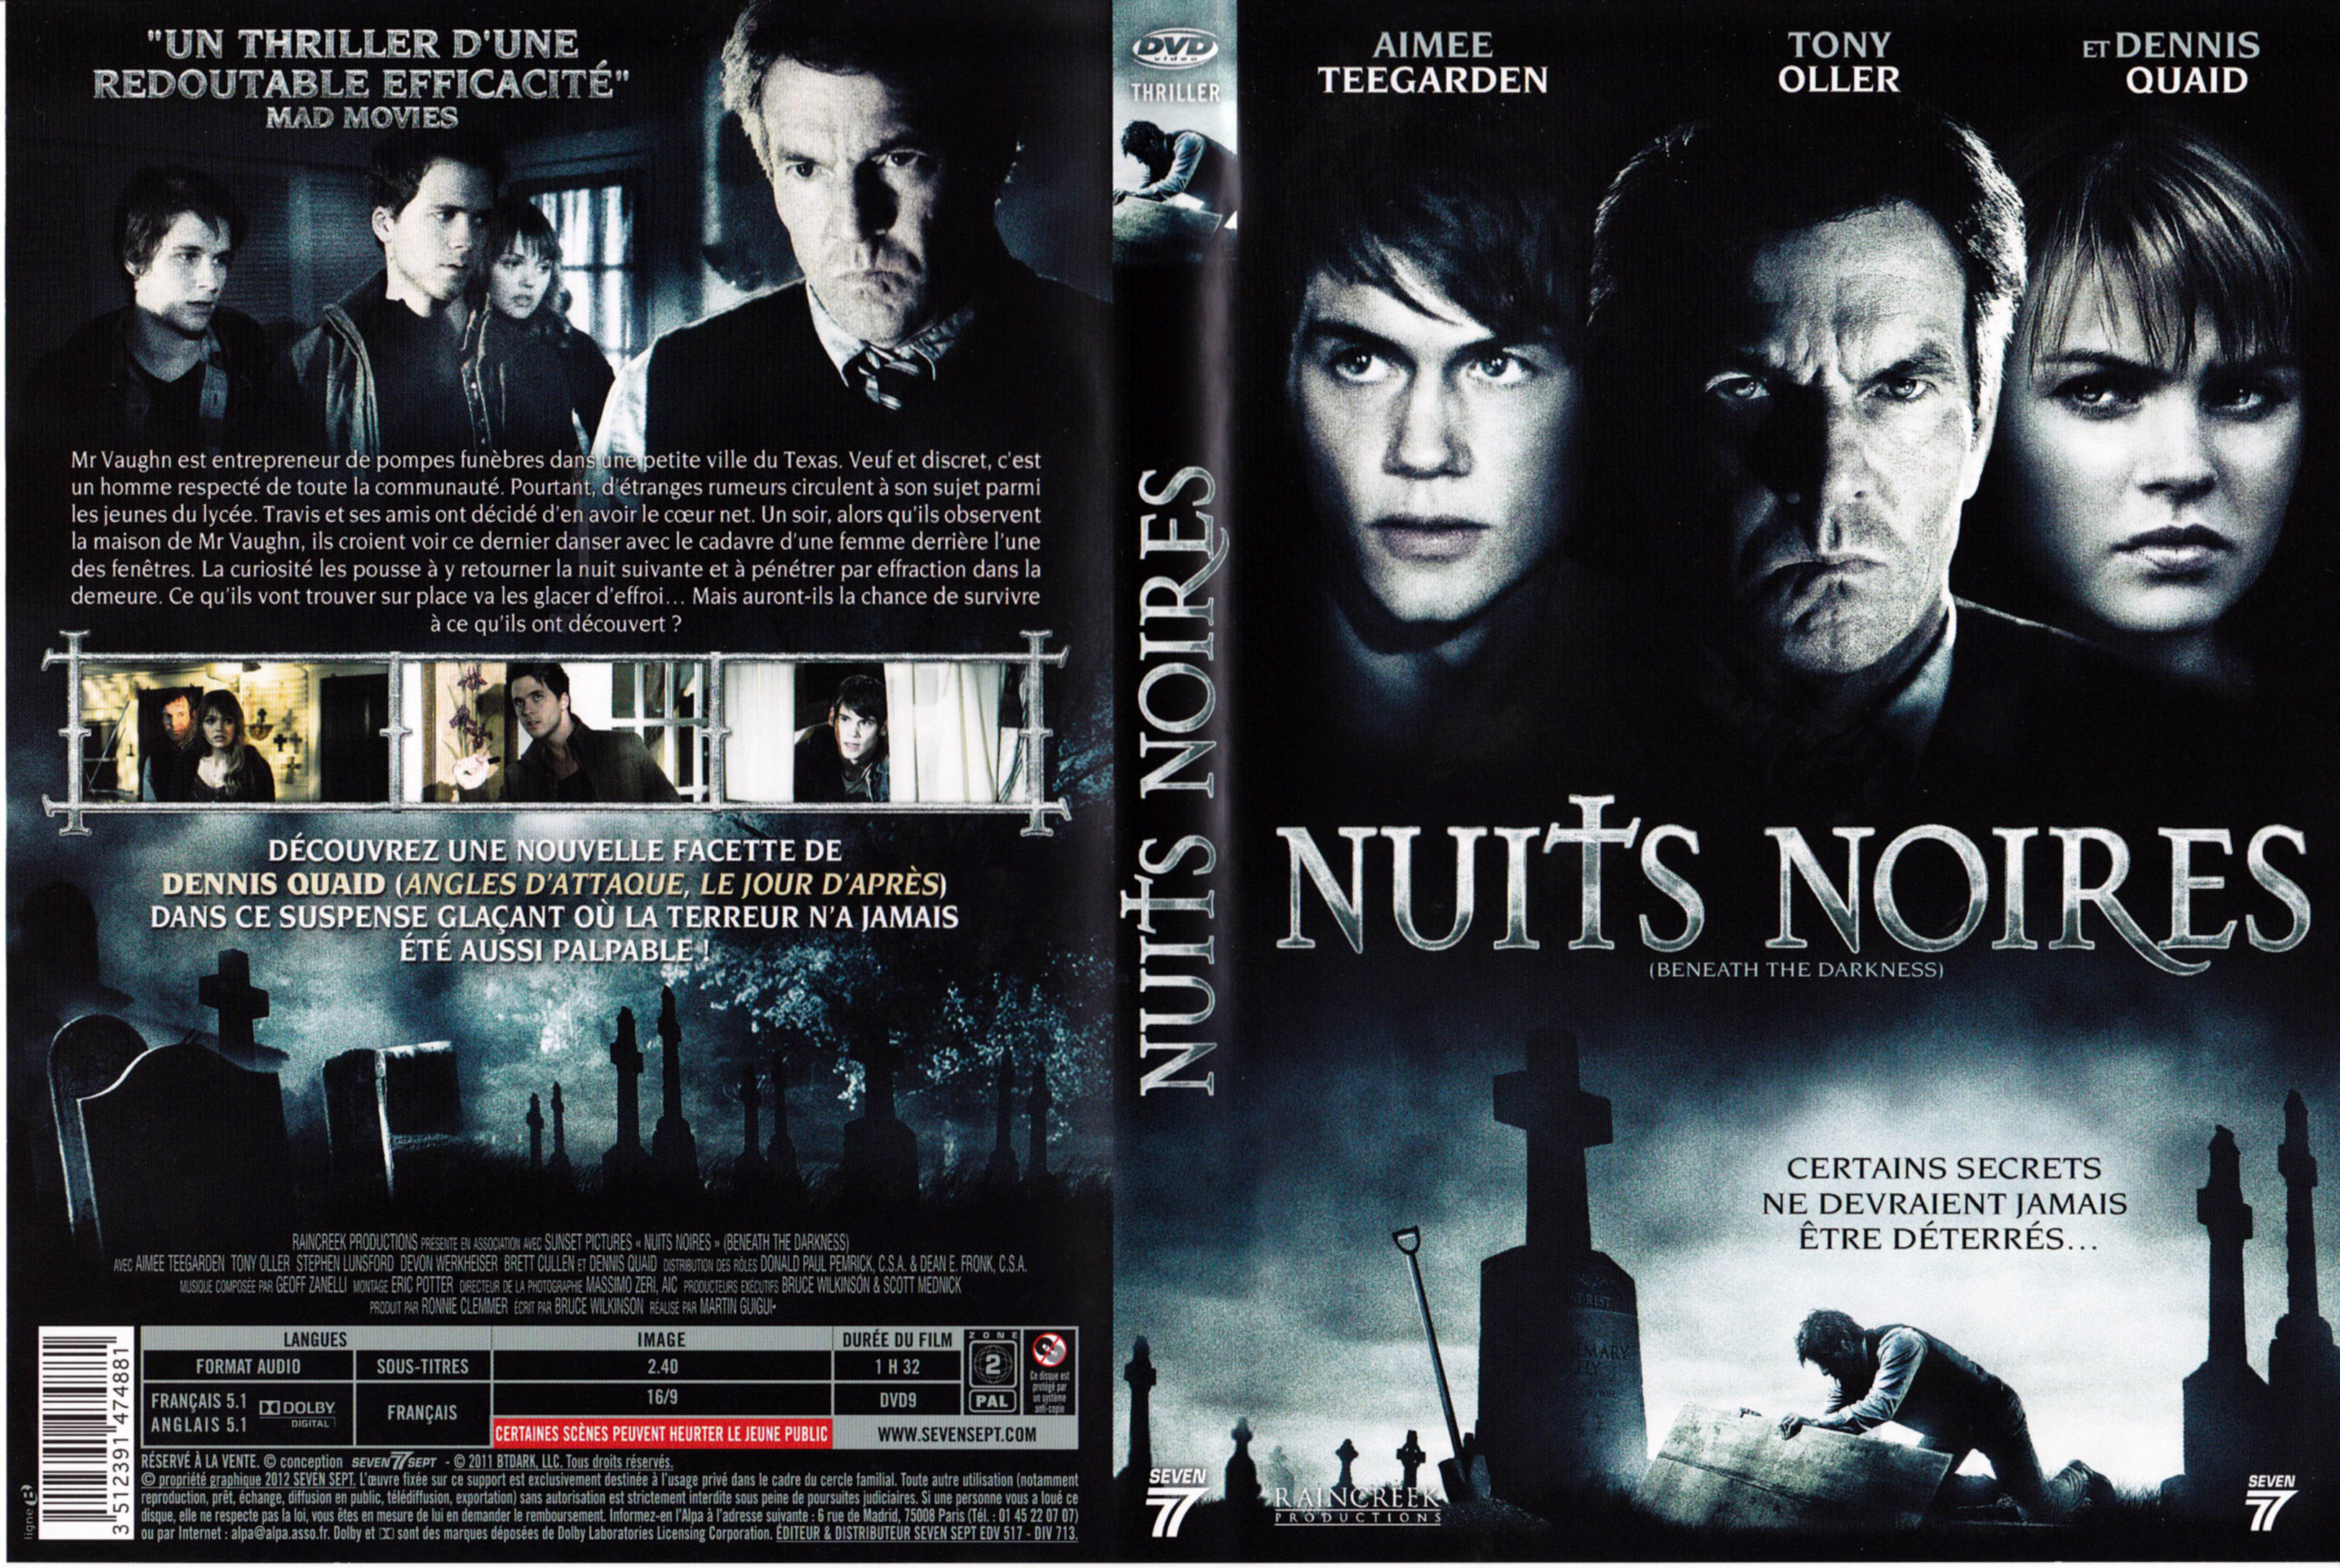 Jaquette DVD Nuits noires